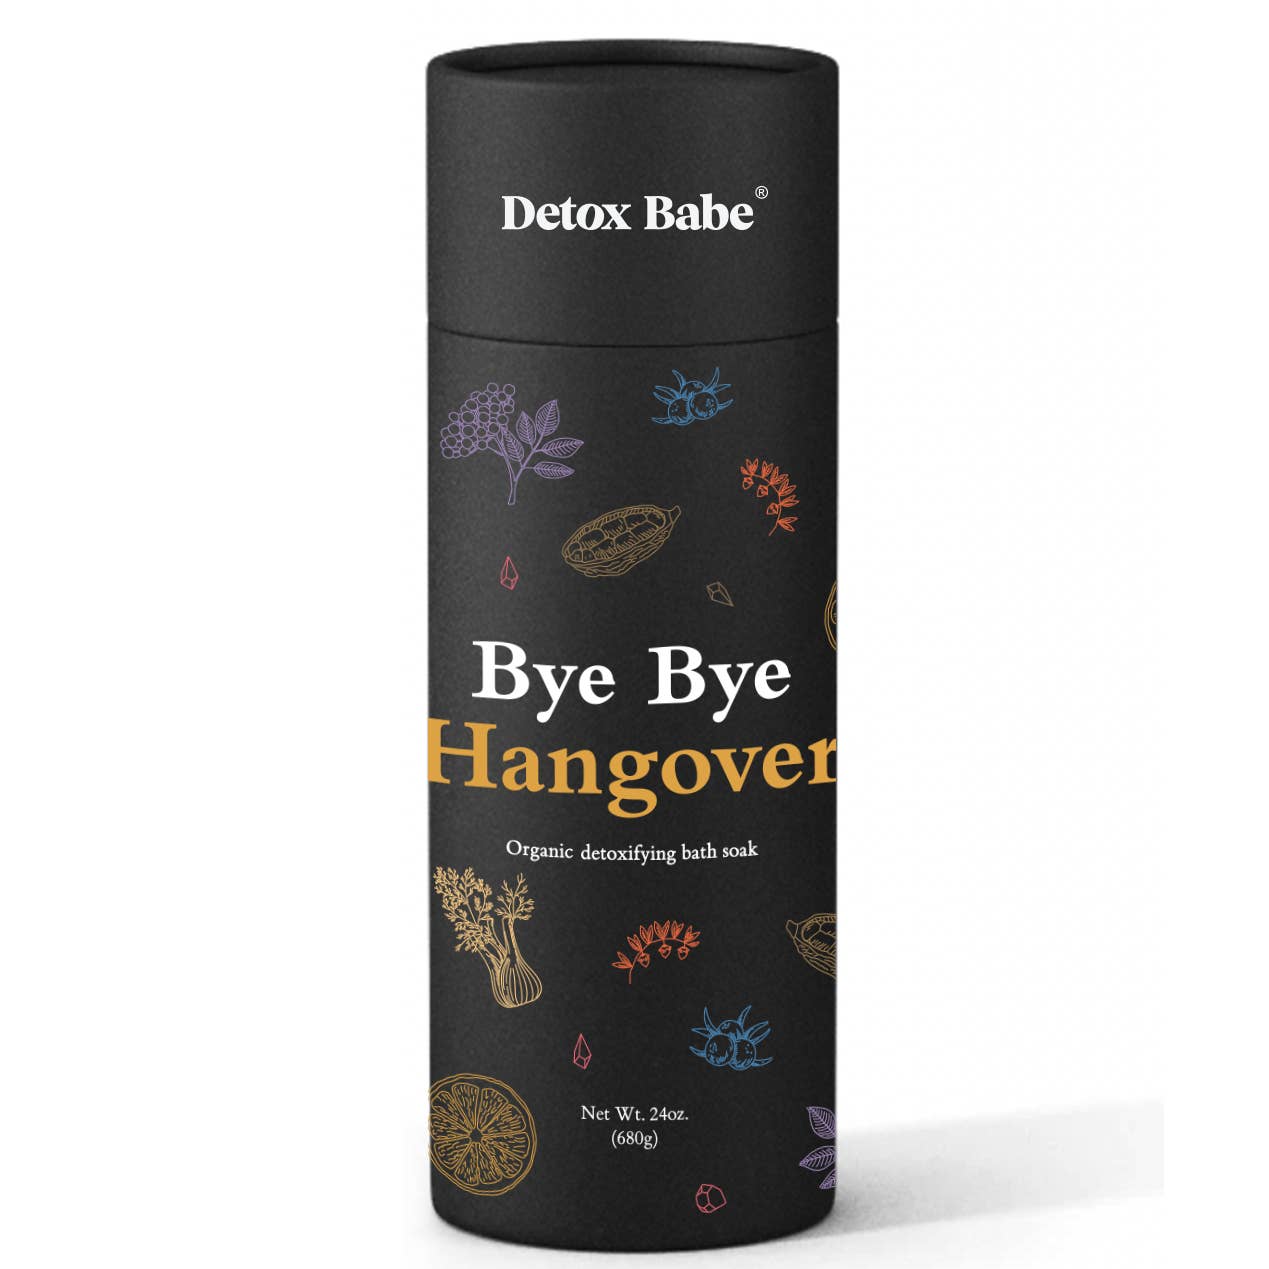 SALE - Detox Babe - Bye Bye Hangover Bath Soak (24 oz)